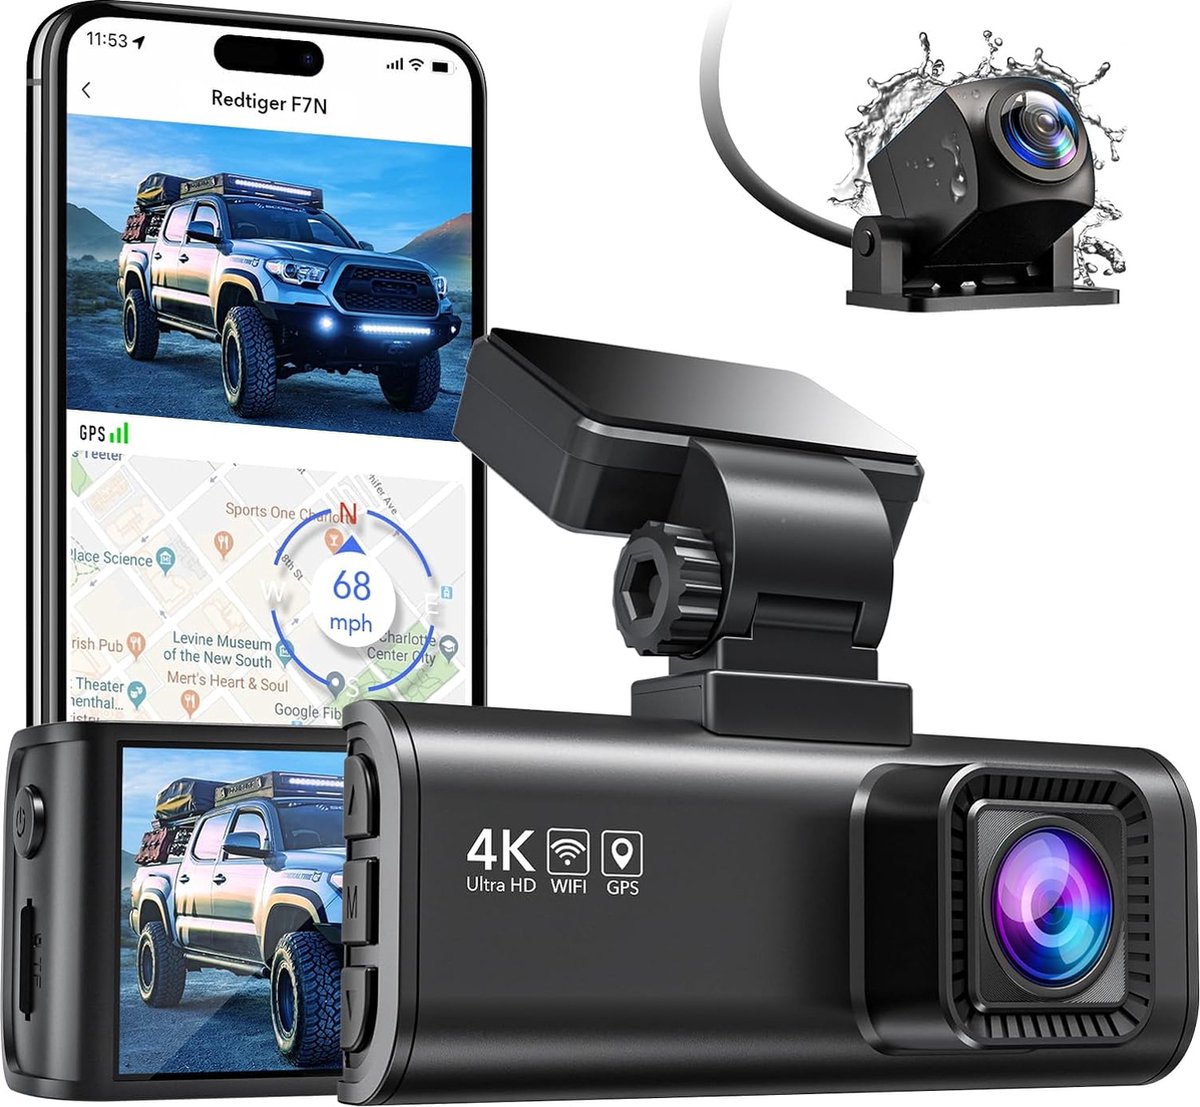 Full HD Auto Dashcam met Display - Dual-Camera Systeem voor Voor- en Achteruitzicht - Groot LCD-display en Parkeermodus - Auto Dashboard Recorder voor Extra Veiligheid en Bewaking